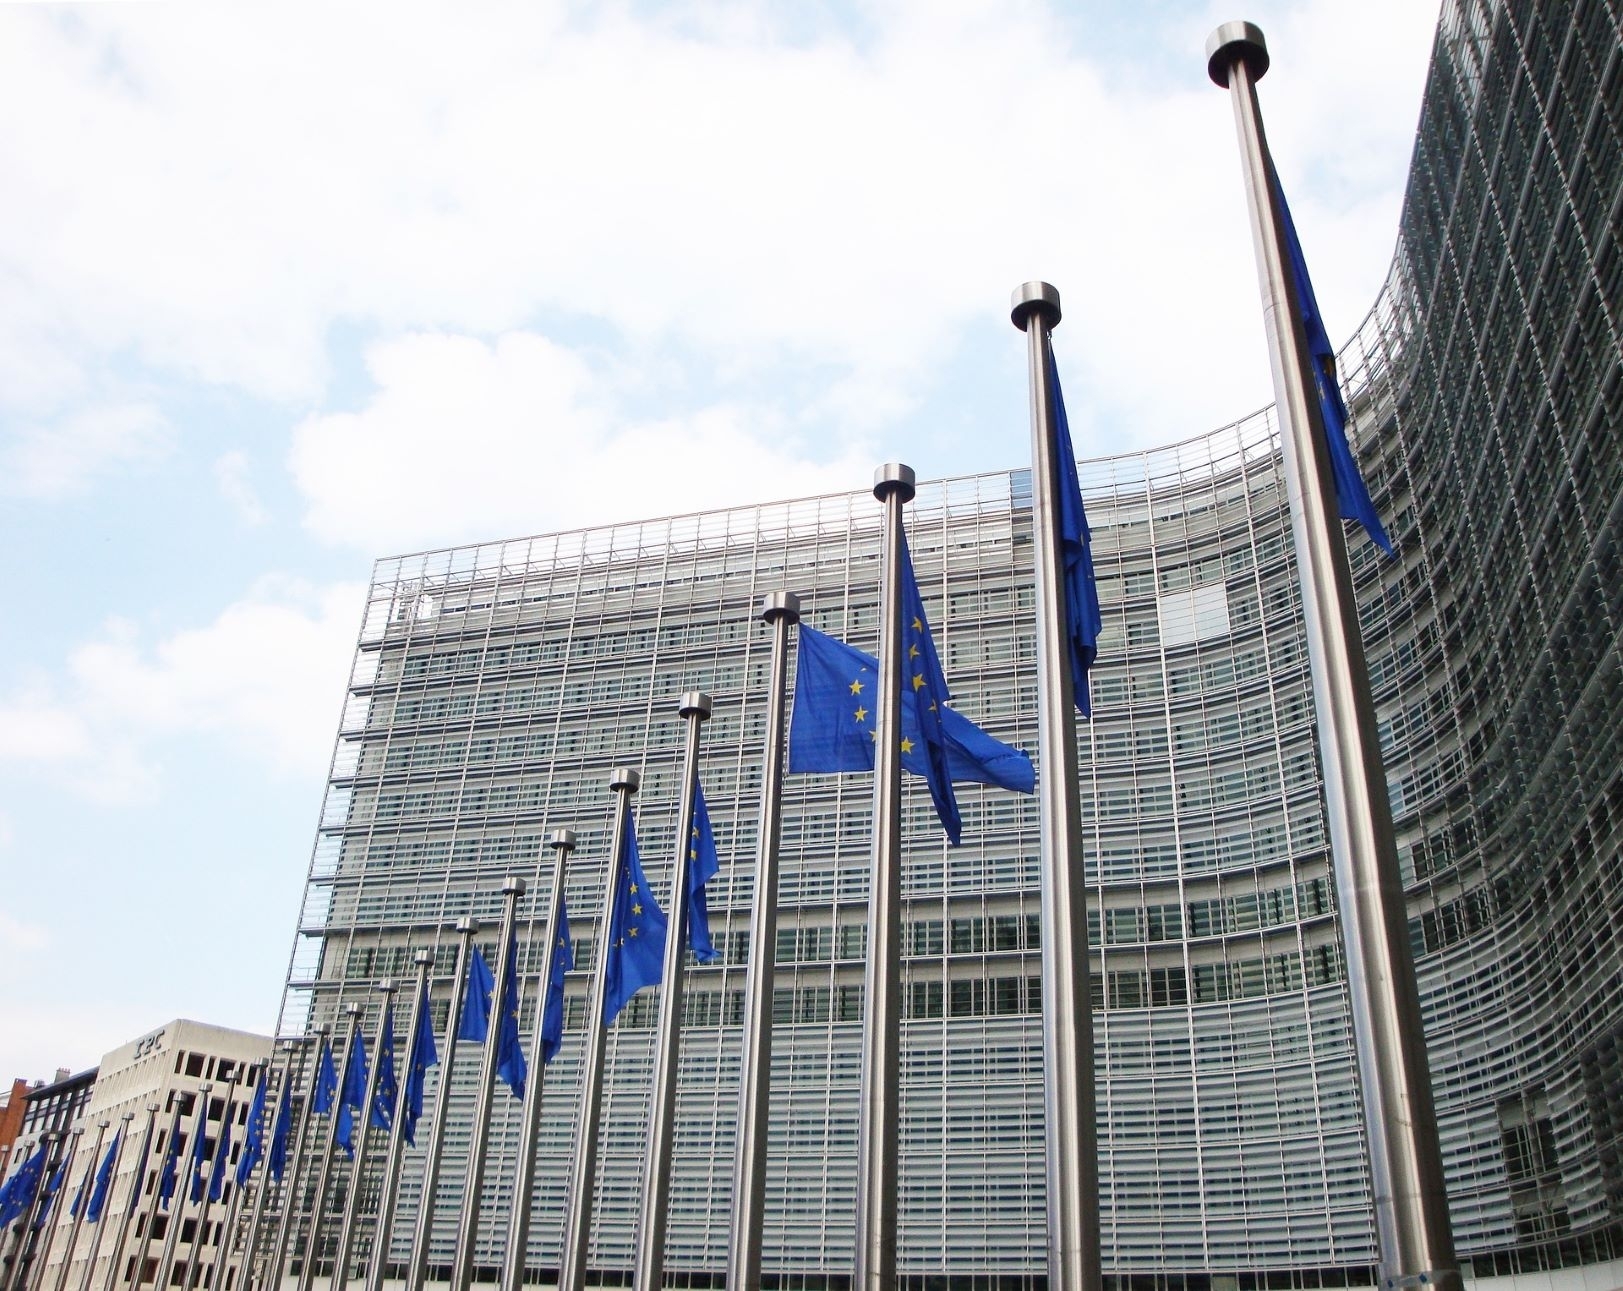 Dėl situacijos pieno rinkoje europarlamentaras kreipėsi į Europos Komisiją